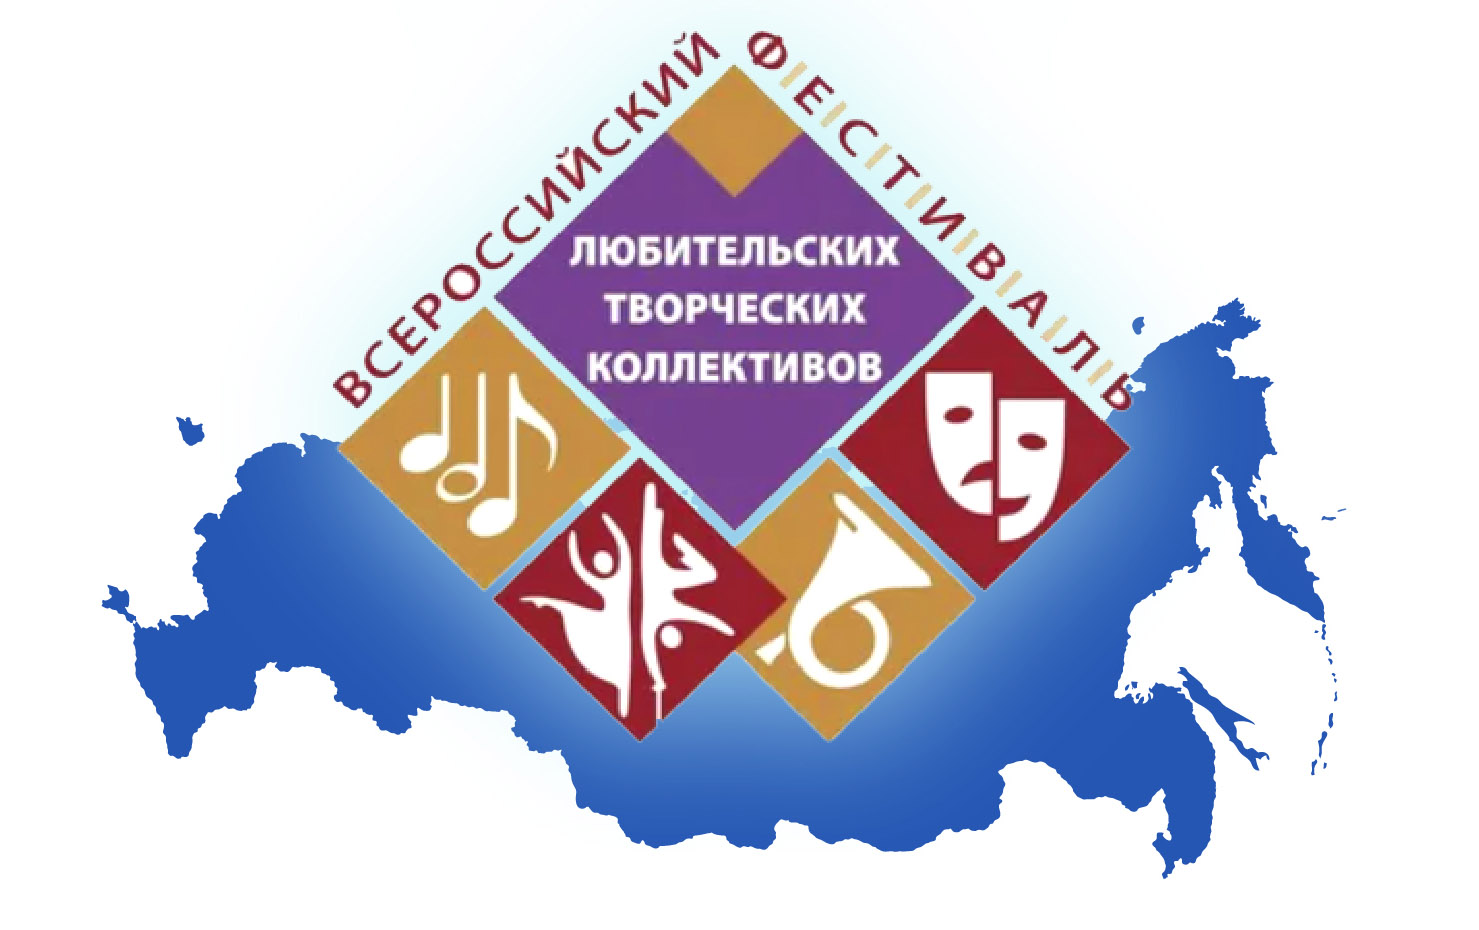 Всероссийский фестиваль-конкурс любительских творческих коллективов!